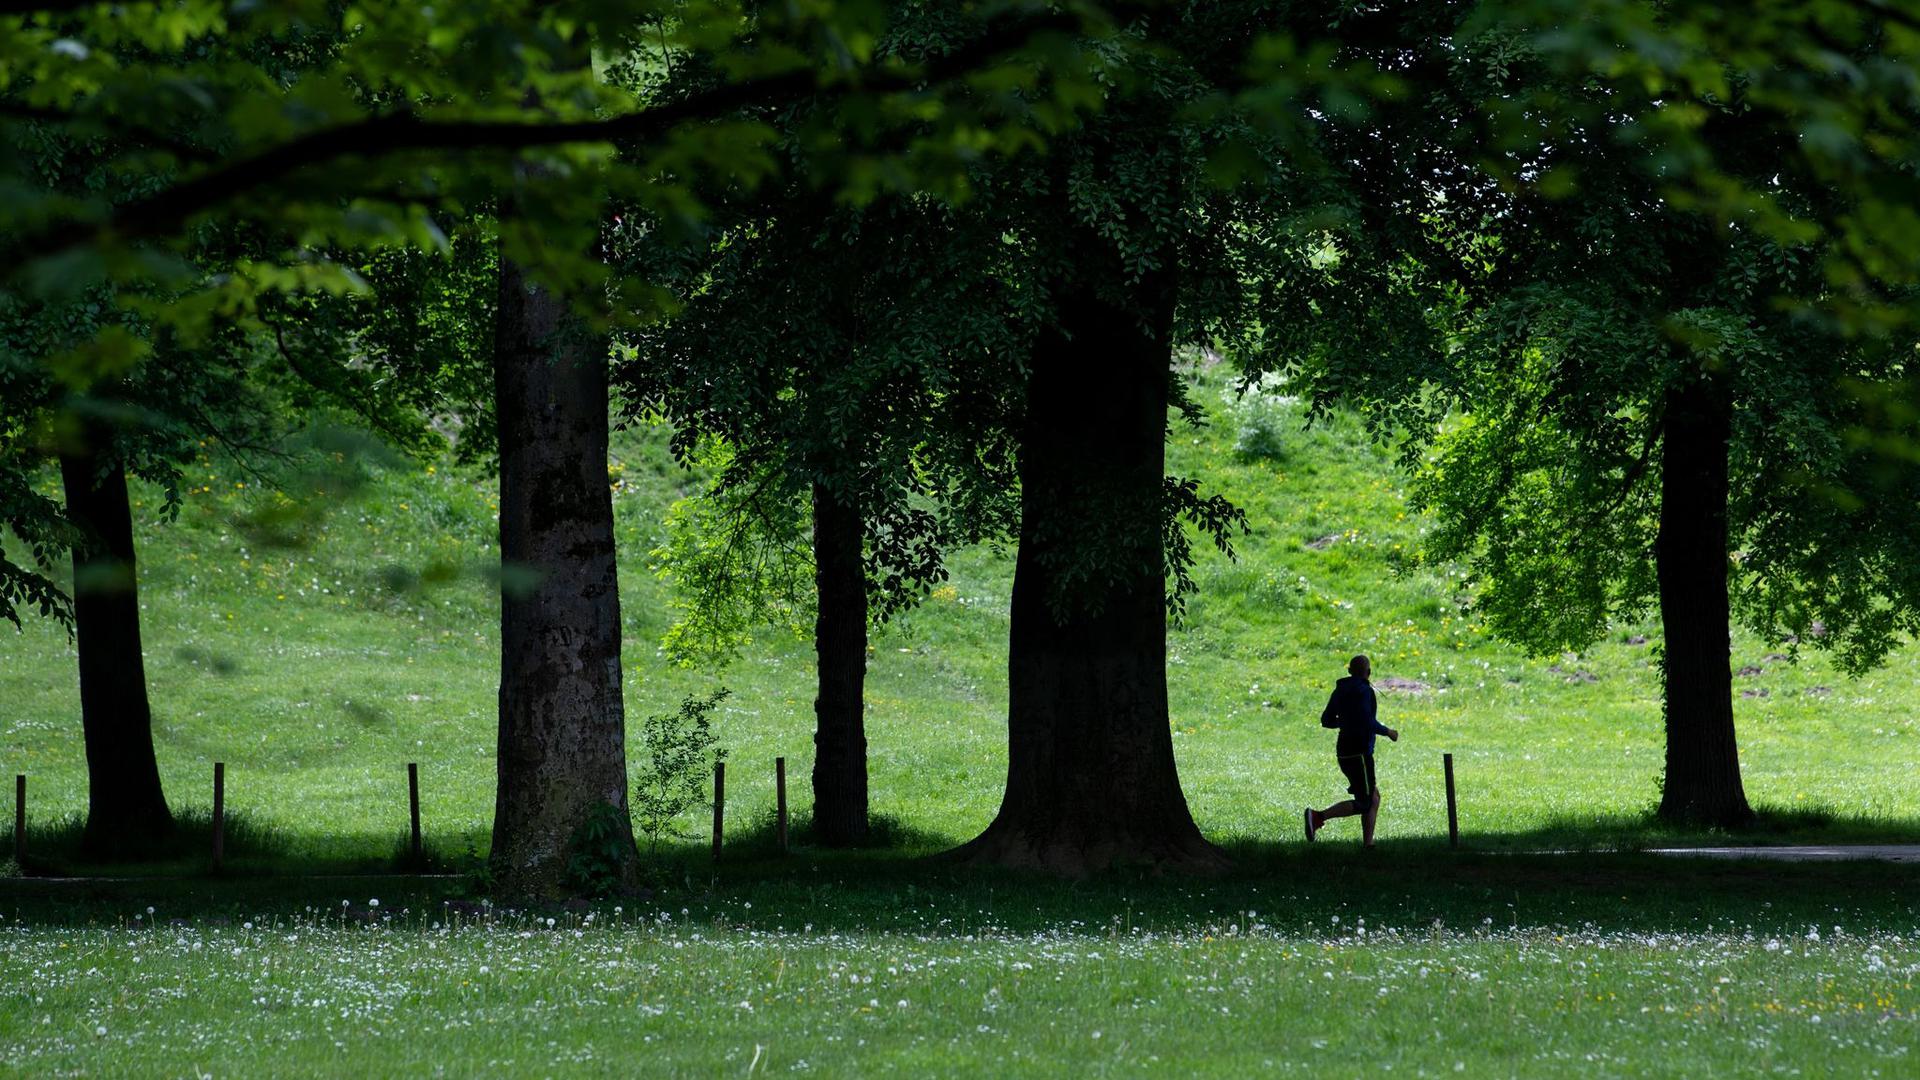 Ein Jogger ist im Englischen Garten in München unterwegs. Bewegung liegt in der Natur des Menschen - von Anfang an.